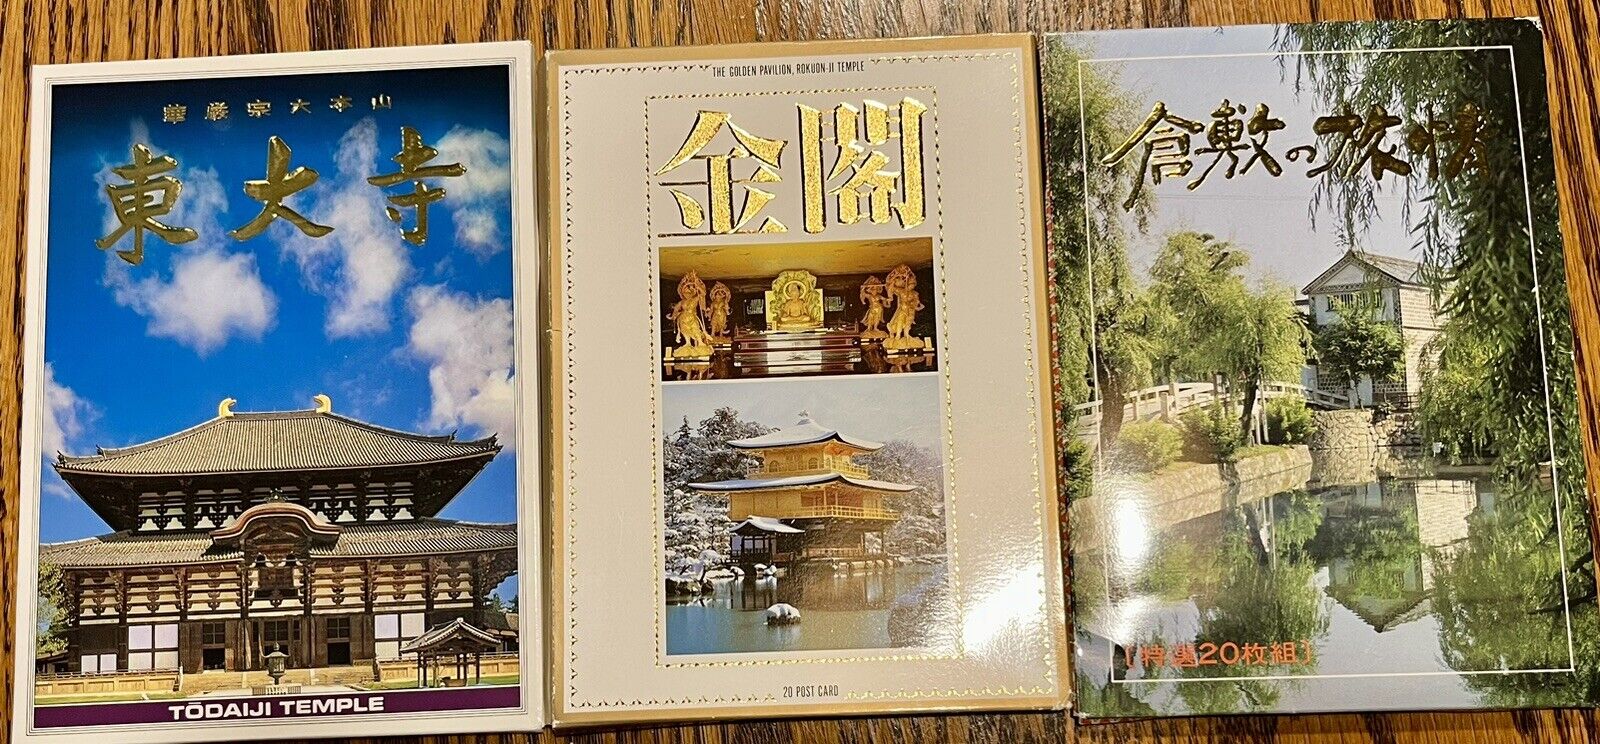 Golden Pavilion, Rokuon-ji Temple 20 Postcard Set With 2 Other Temple Sets 50 Ct